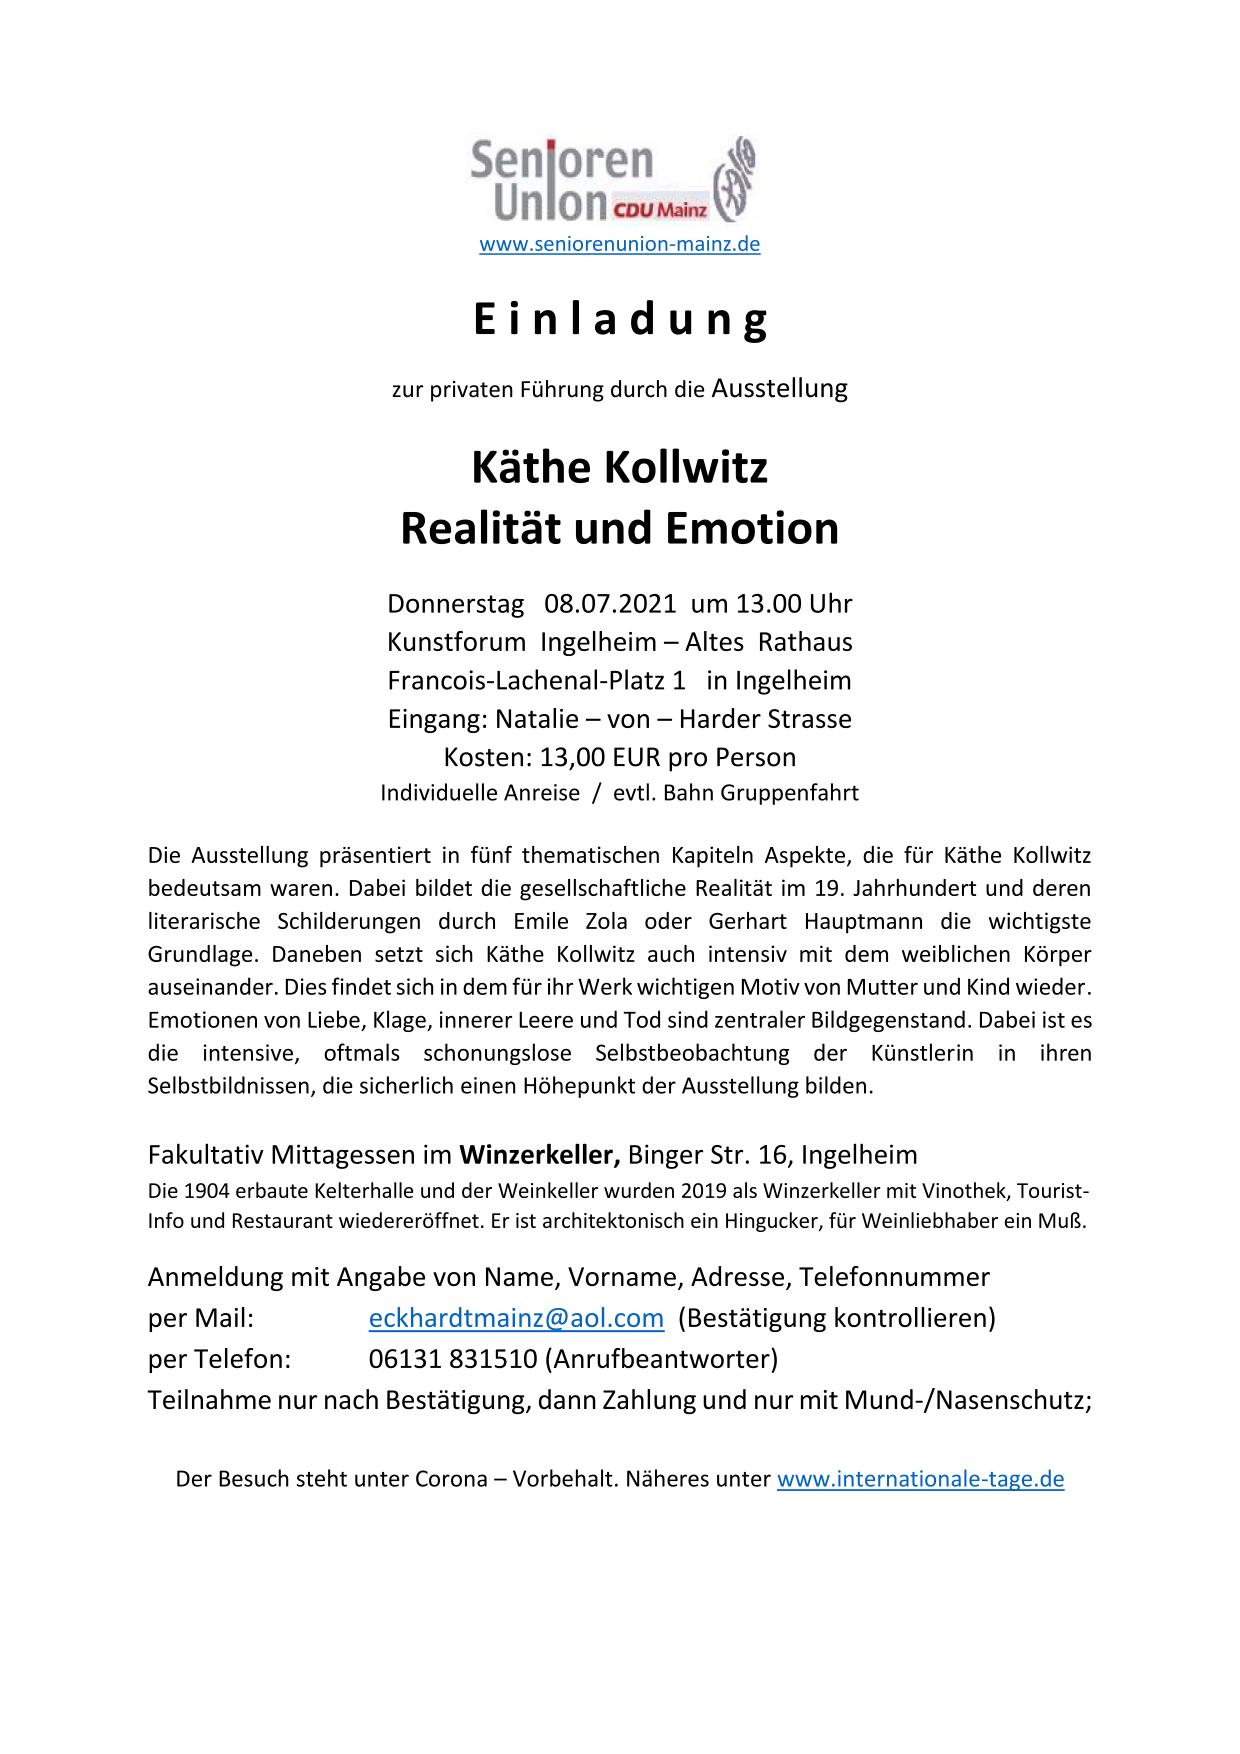 2021.07.08. Einladung Ingelheim Käthe Kollwitz 01